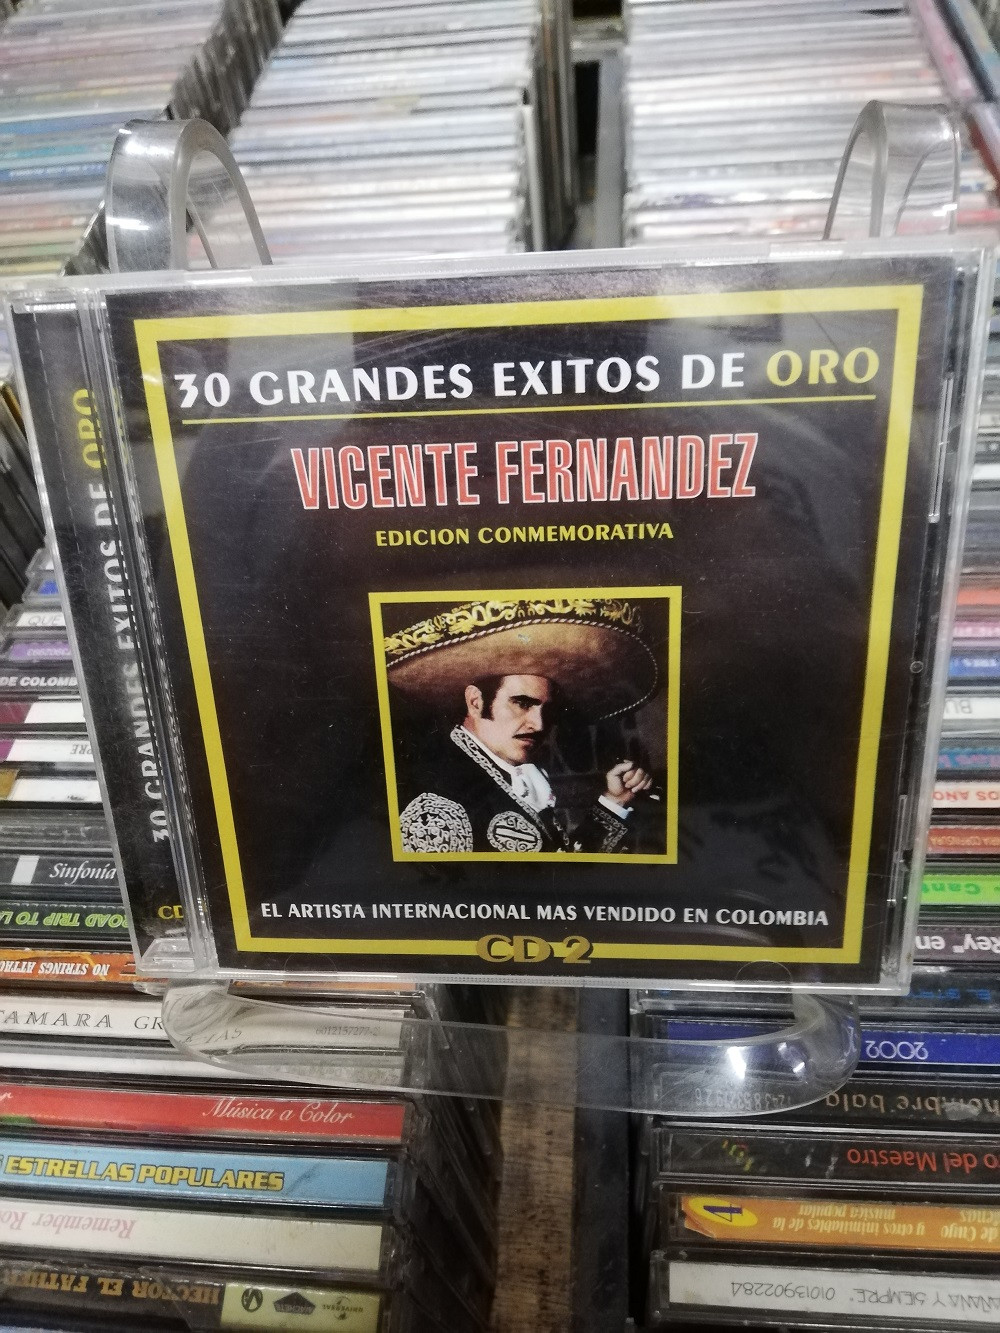 Imagen CD VICENTE FERNANDEZ - 30 GRANDES EXITOS DE ORO VOL. 2 1